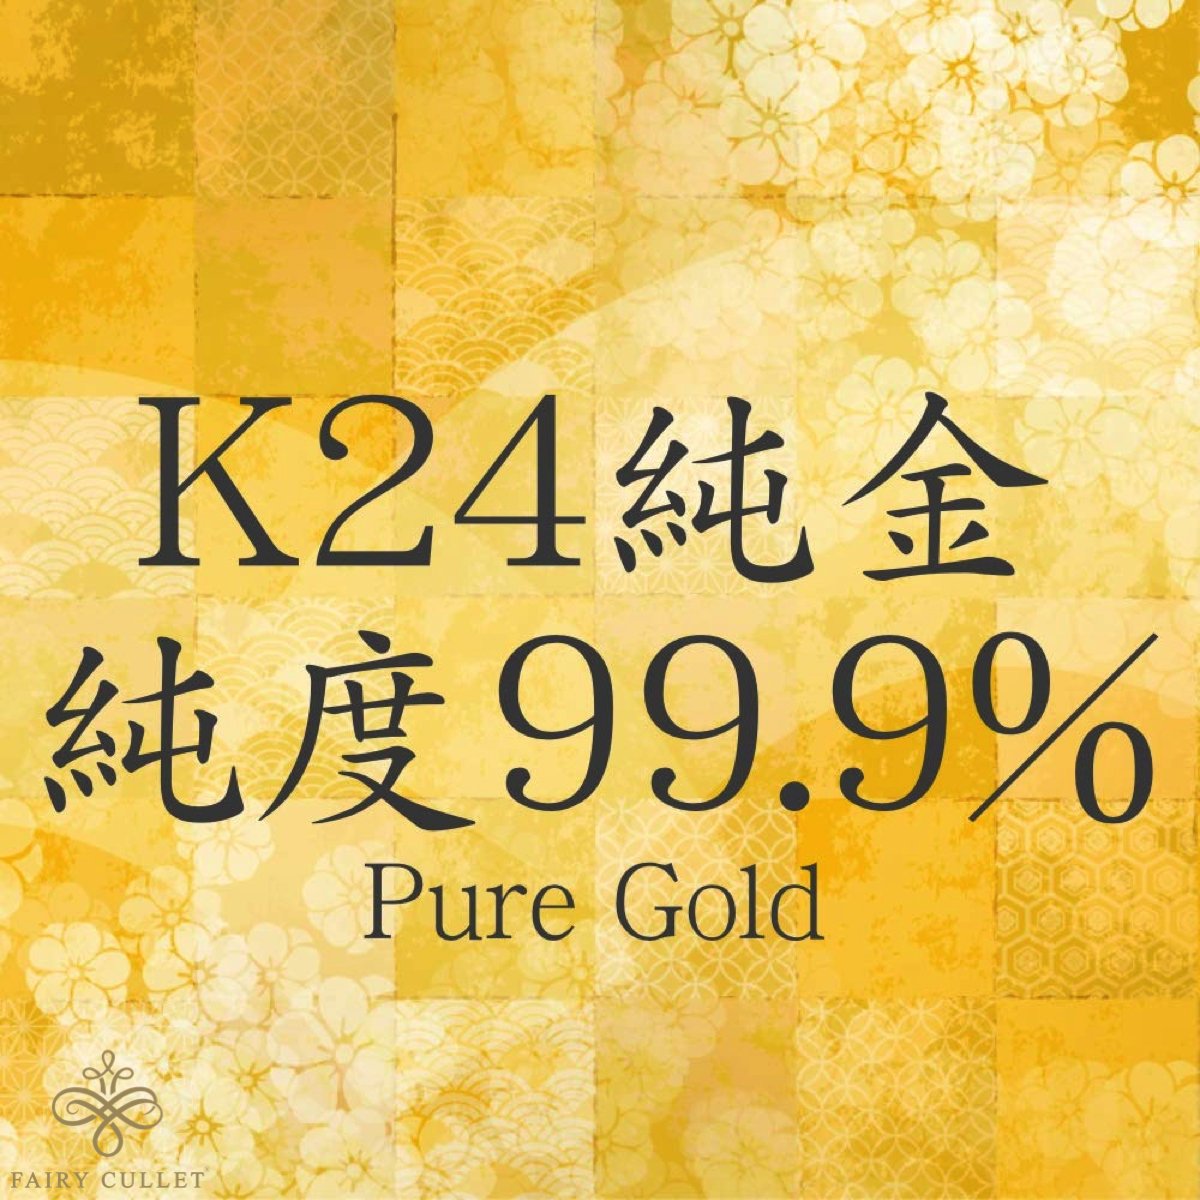 24金ネックレス K24 2面喜平チェーン 日本製 純金 検定印 30g 50cm